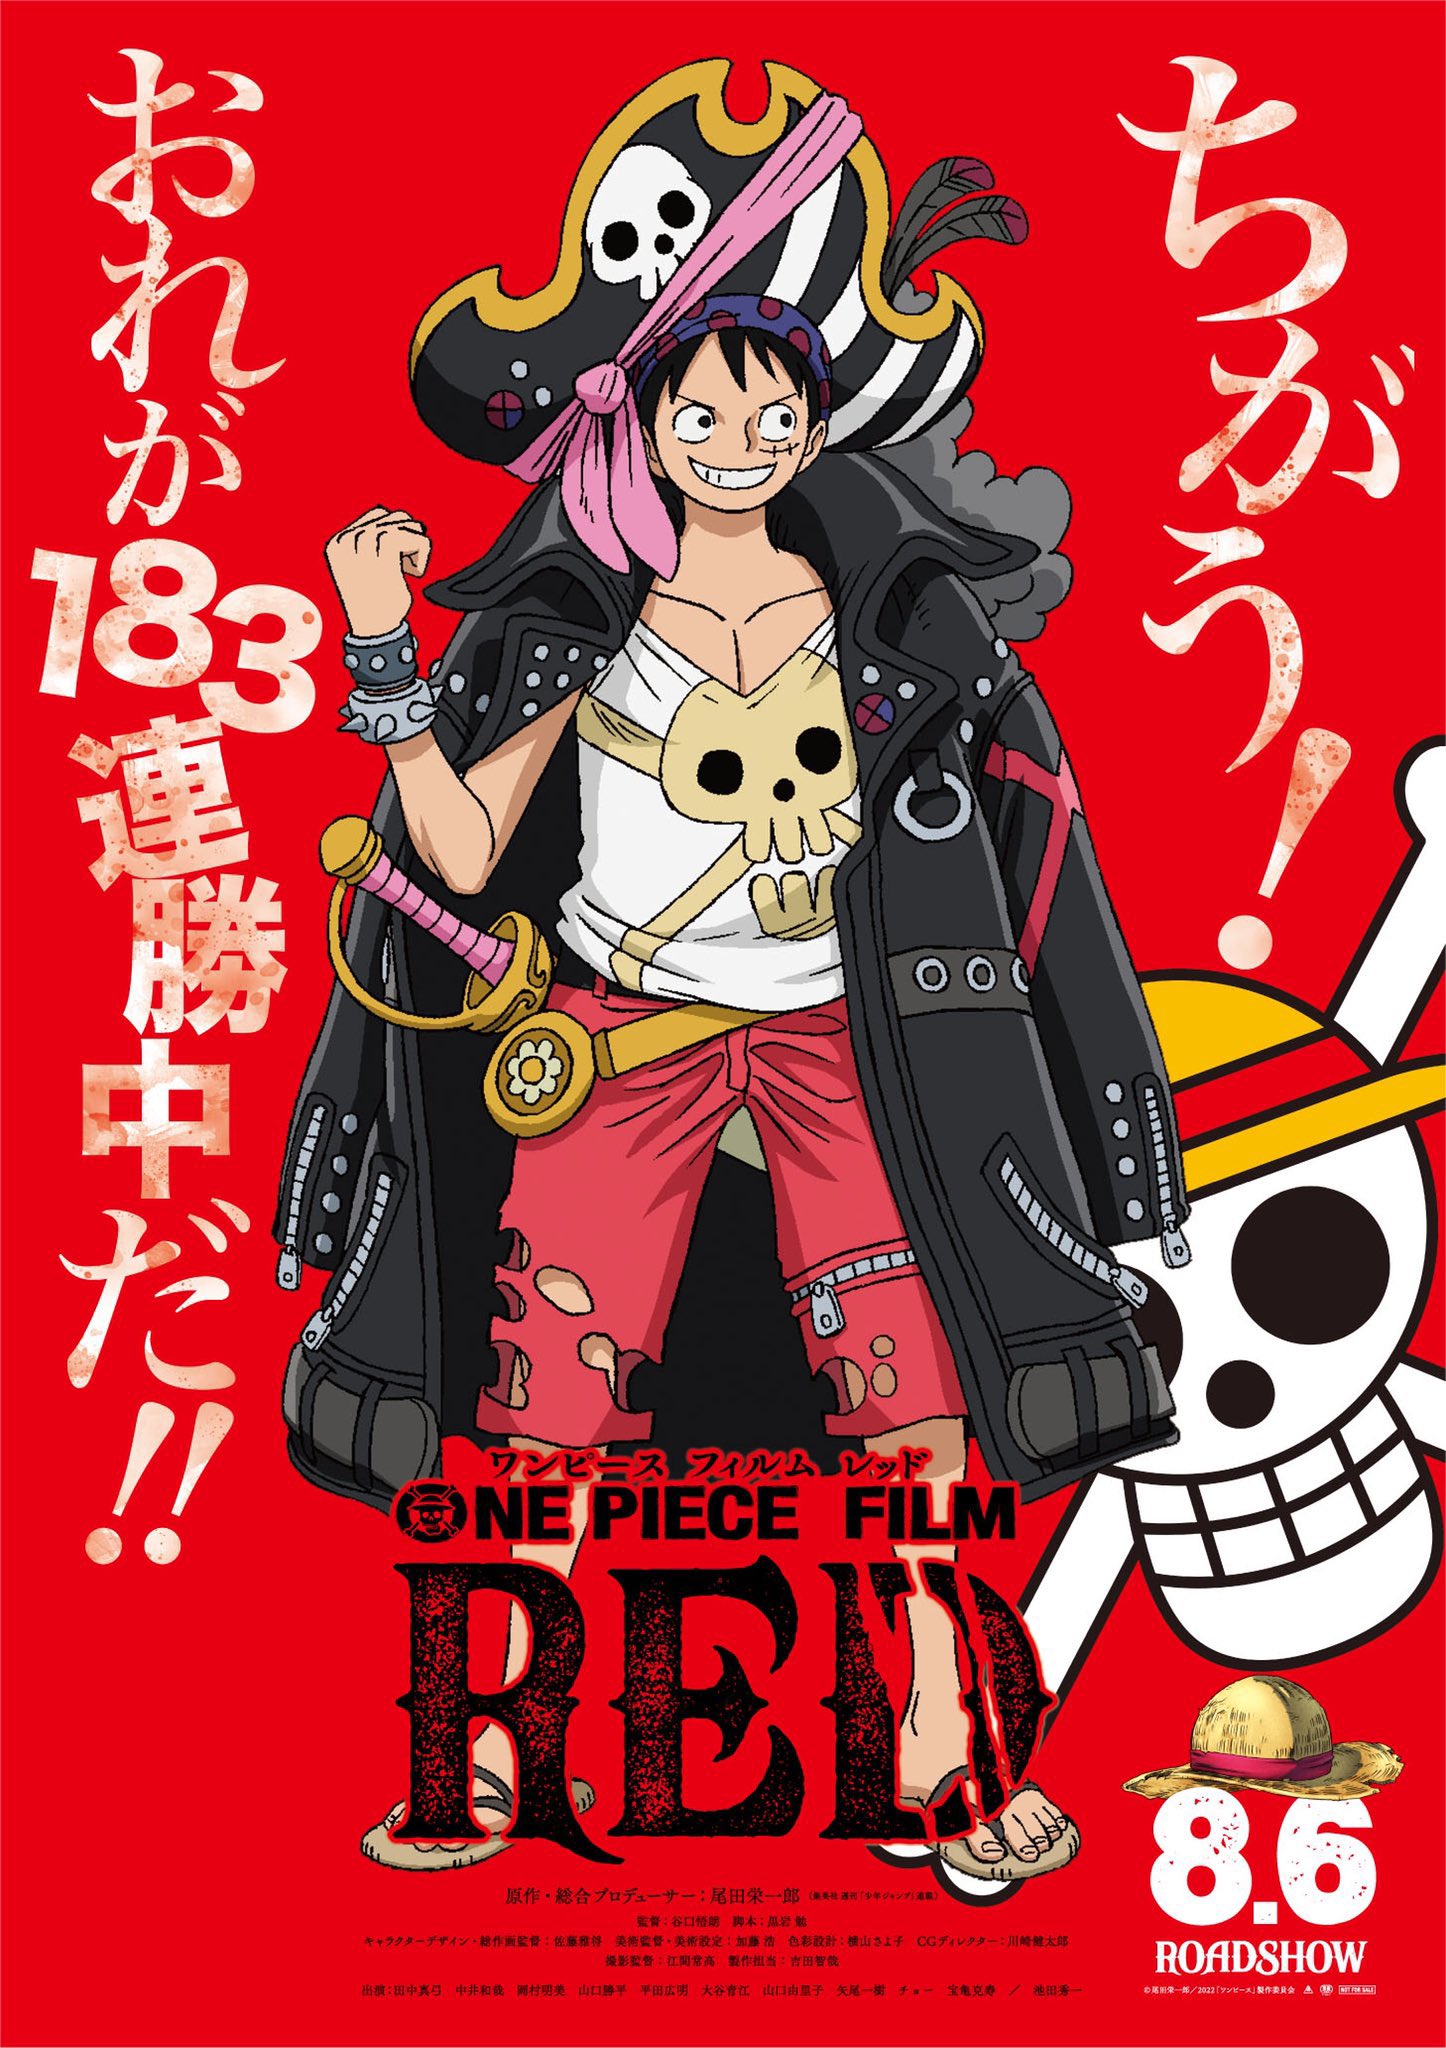 One Piece Onepiecepanel Twitter